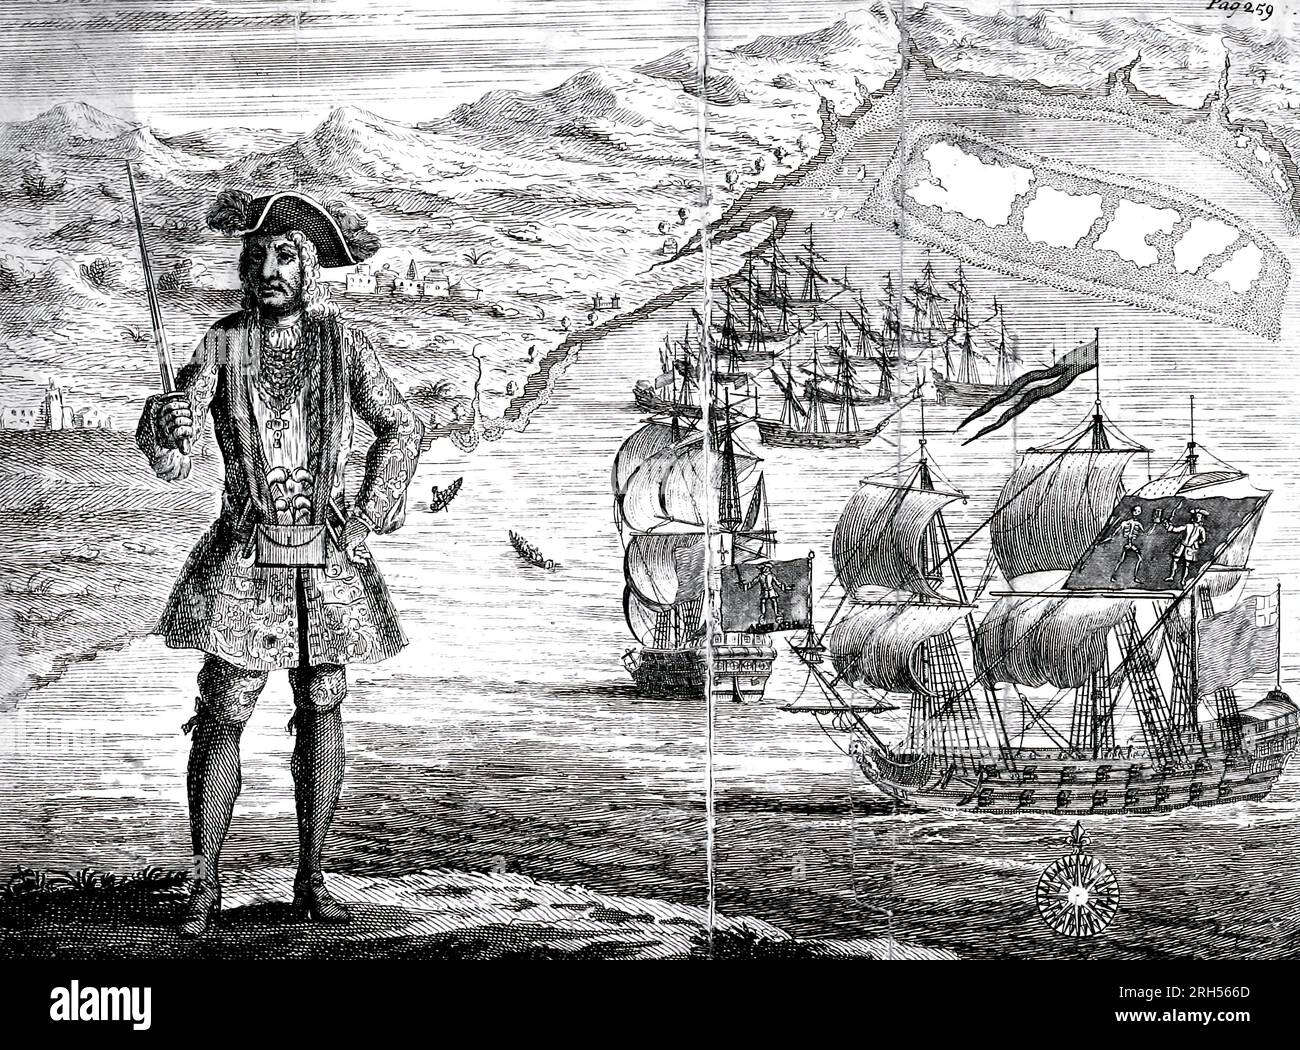 Kapitän Bartho Roberts mit zwei Schiffen, dem Königlichen Vermögen und dem Ranger, segelt in der Whydah Road Ouidah an der Küste Guiney (Guinea). Januar 11. 1722 Bartholomew Roberts (17. Mai 1682 – 10. Februar 1722), geboren John Roberts, war ein walisischer Pirat, der, gemessen an Schiffen, die gefangen wurden, der erfolgreichste Pirat des Goldenen Zeitalters der Piraterie. Während seiner Piratenkarriere hat er über 470 preisgekrönte Schiffe übernommen. Roberts hat zwischen 1719 und 1722 Schiffe vor der amerikanischen Küste und der westafrikanischen Küste überfallen; er ist auch dafür bekannt, dass er seinen eigenen Piratenkodex entwickelt und eine frühe Variante des Skull and Crossbones FLA eingeführt hat Stockfoto